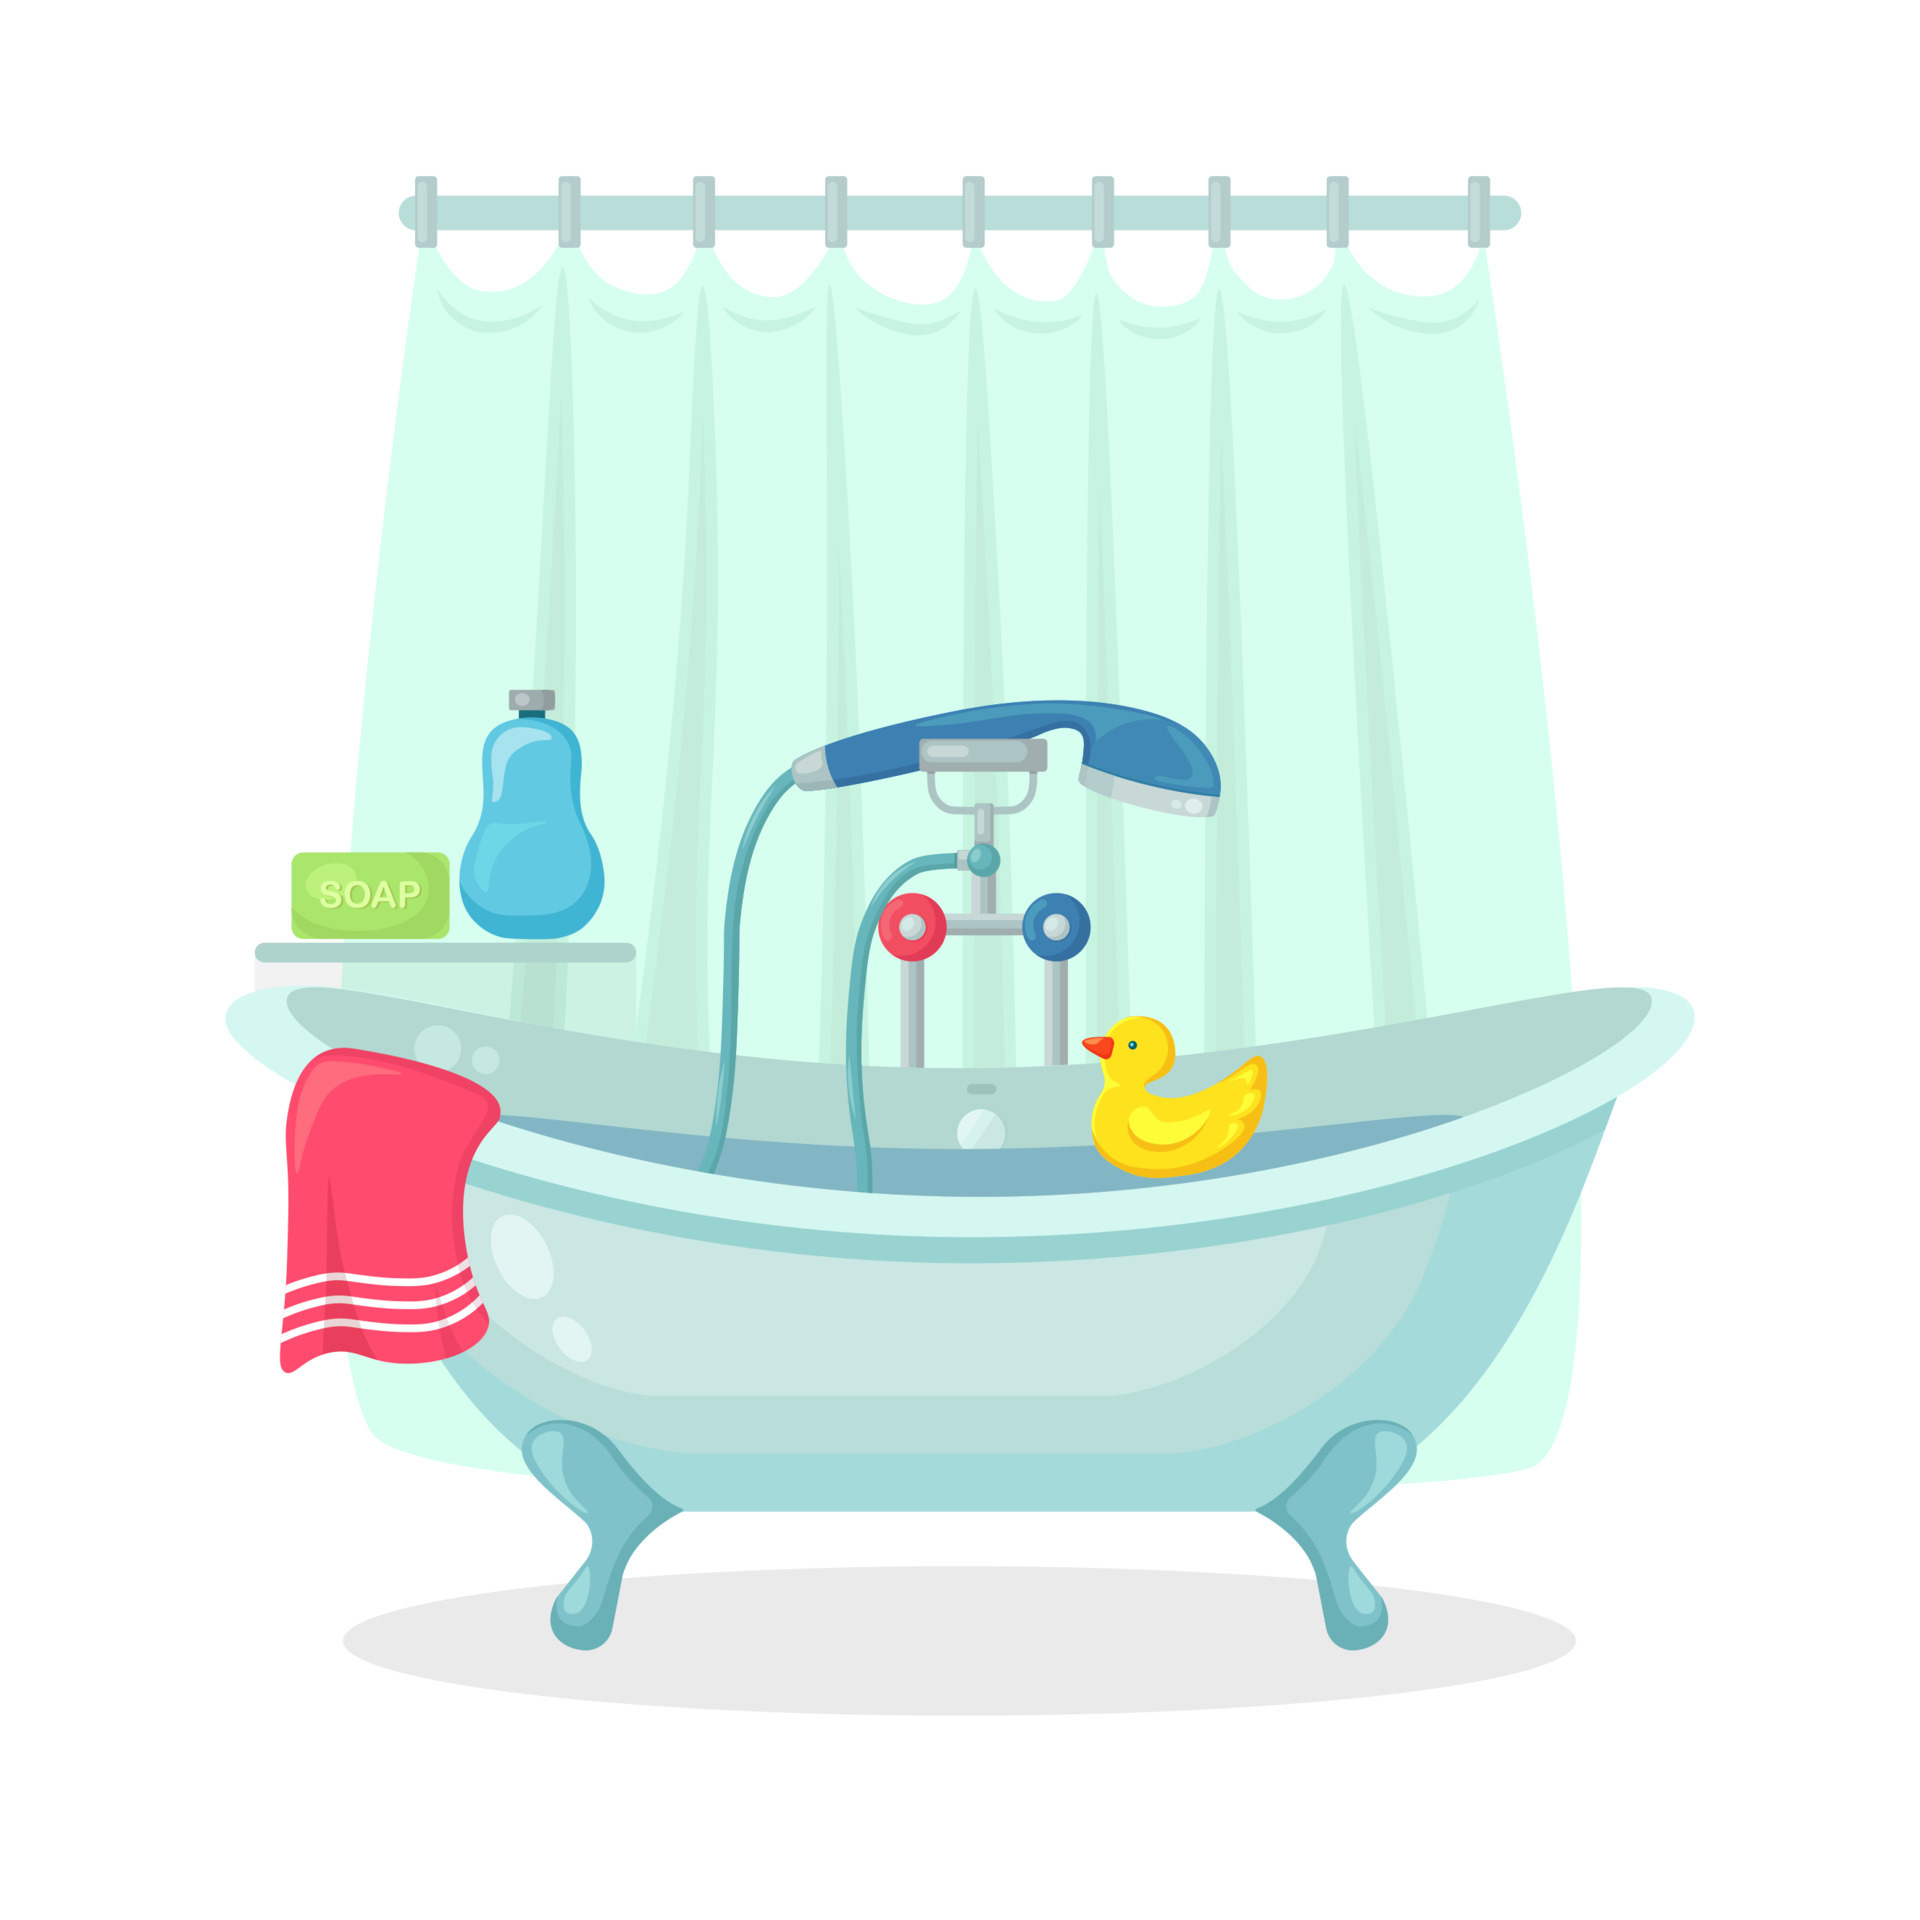 bagno pieno di schiuma con bolle isolate sullo sfondo. interno del bagno.  rubinetti doccia, sapone, vasca da bagno, paperella di gomma e asciugamano  rosa. attrezzature comode per fare il bagno e rilassarsi.